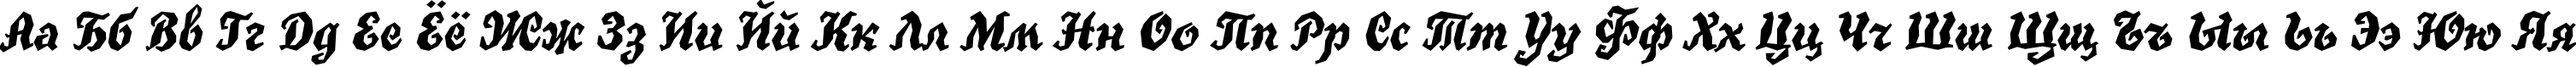 Пример написания русского алфавита шрифтом TrueGritC